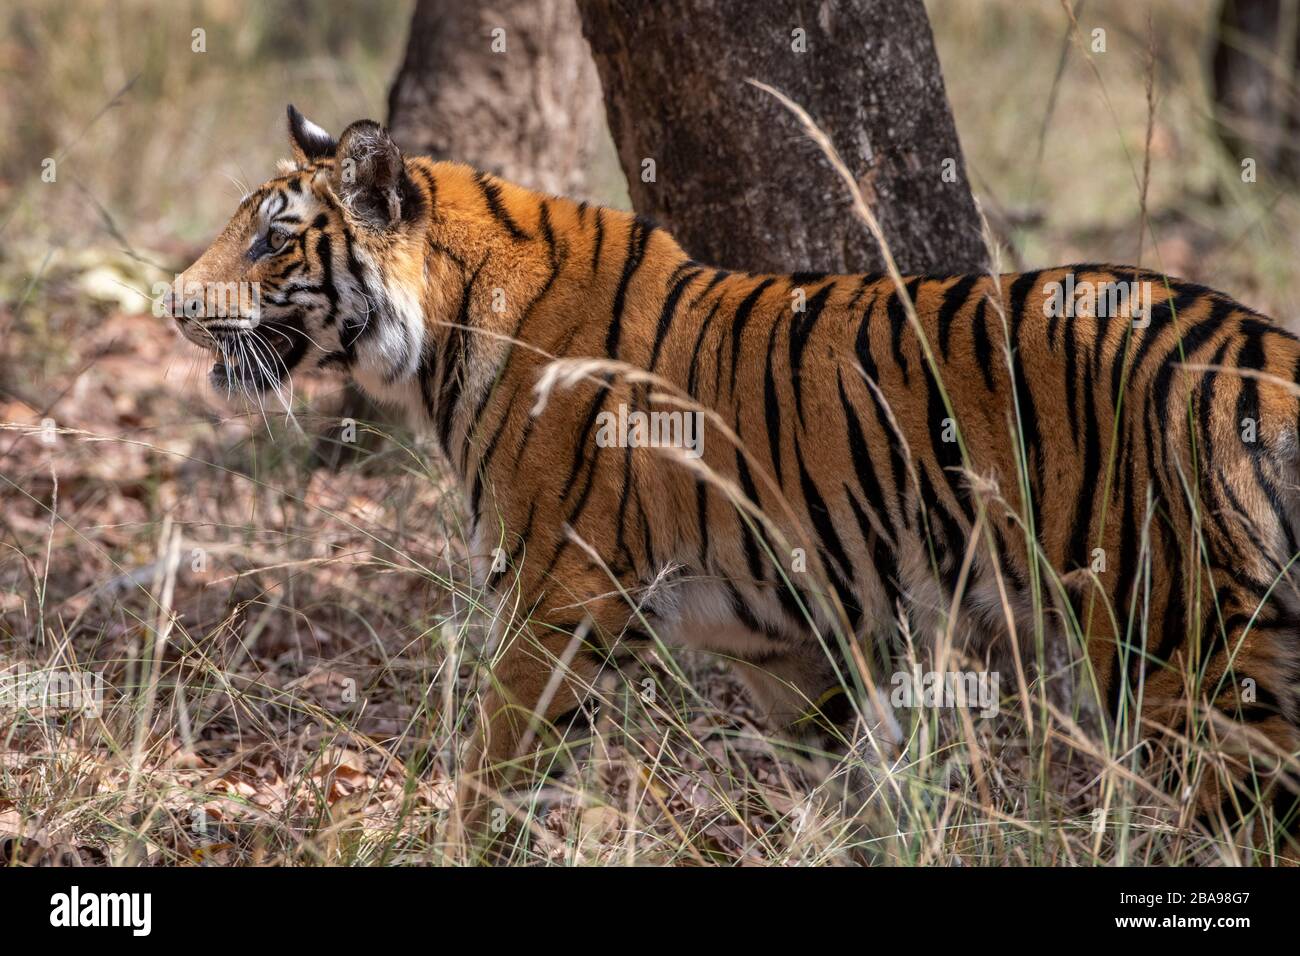 India, Madhya Pradesh, Bandhavgarh National Park. Young female Bengal tiger (WILD: Panthera tigris) endangered species. Stock Photo